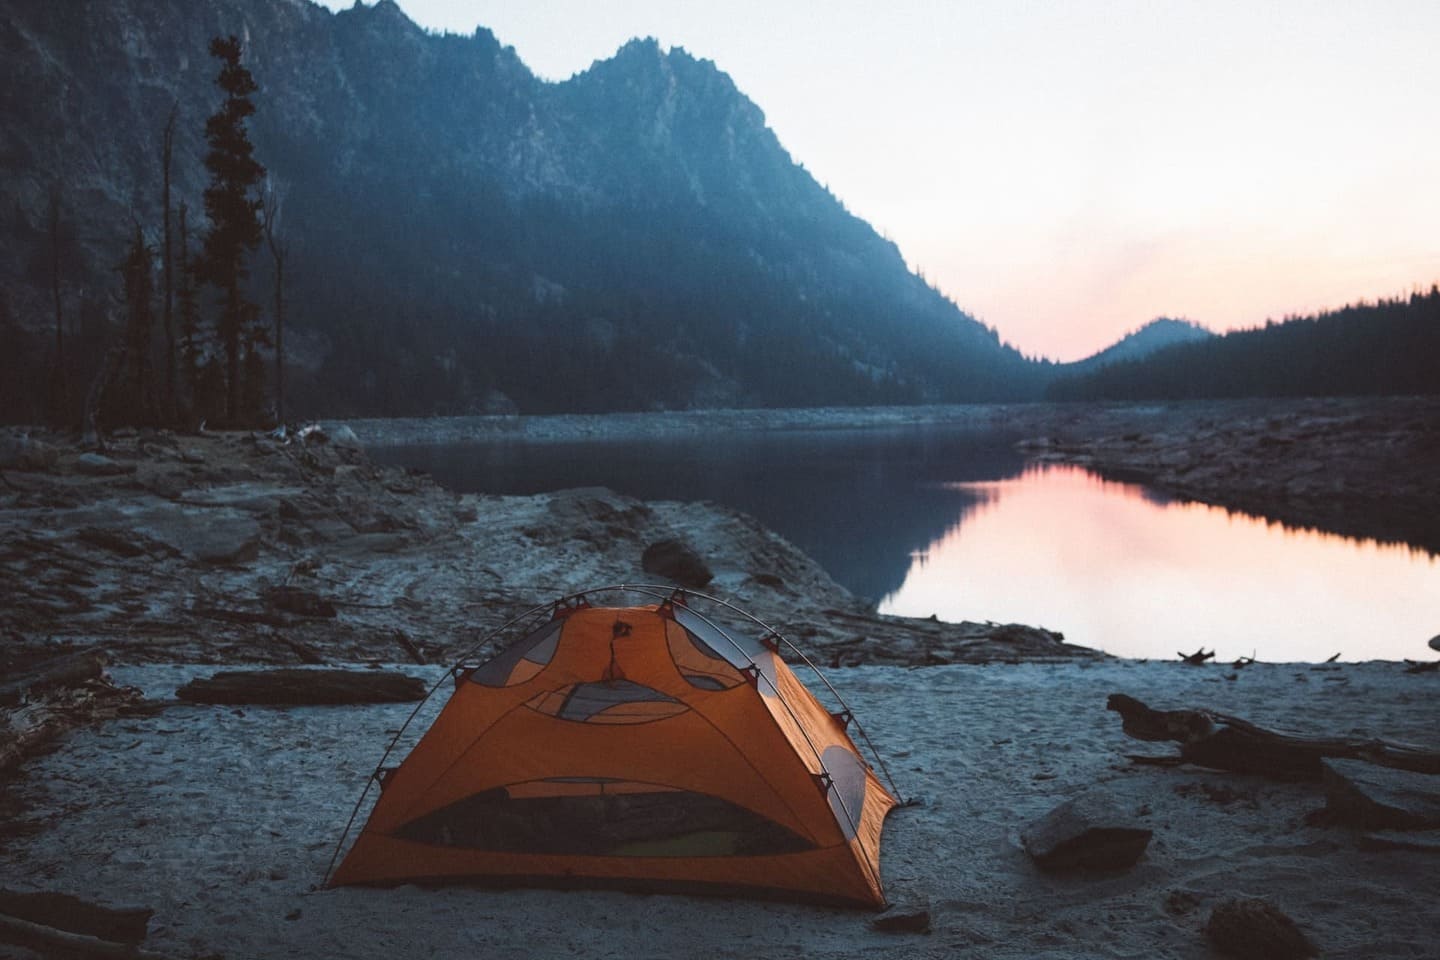 Best Survival Tent